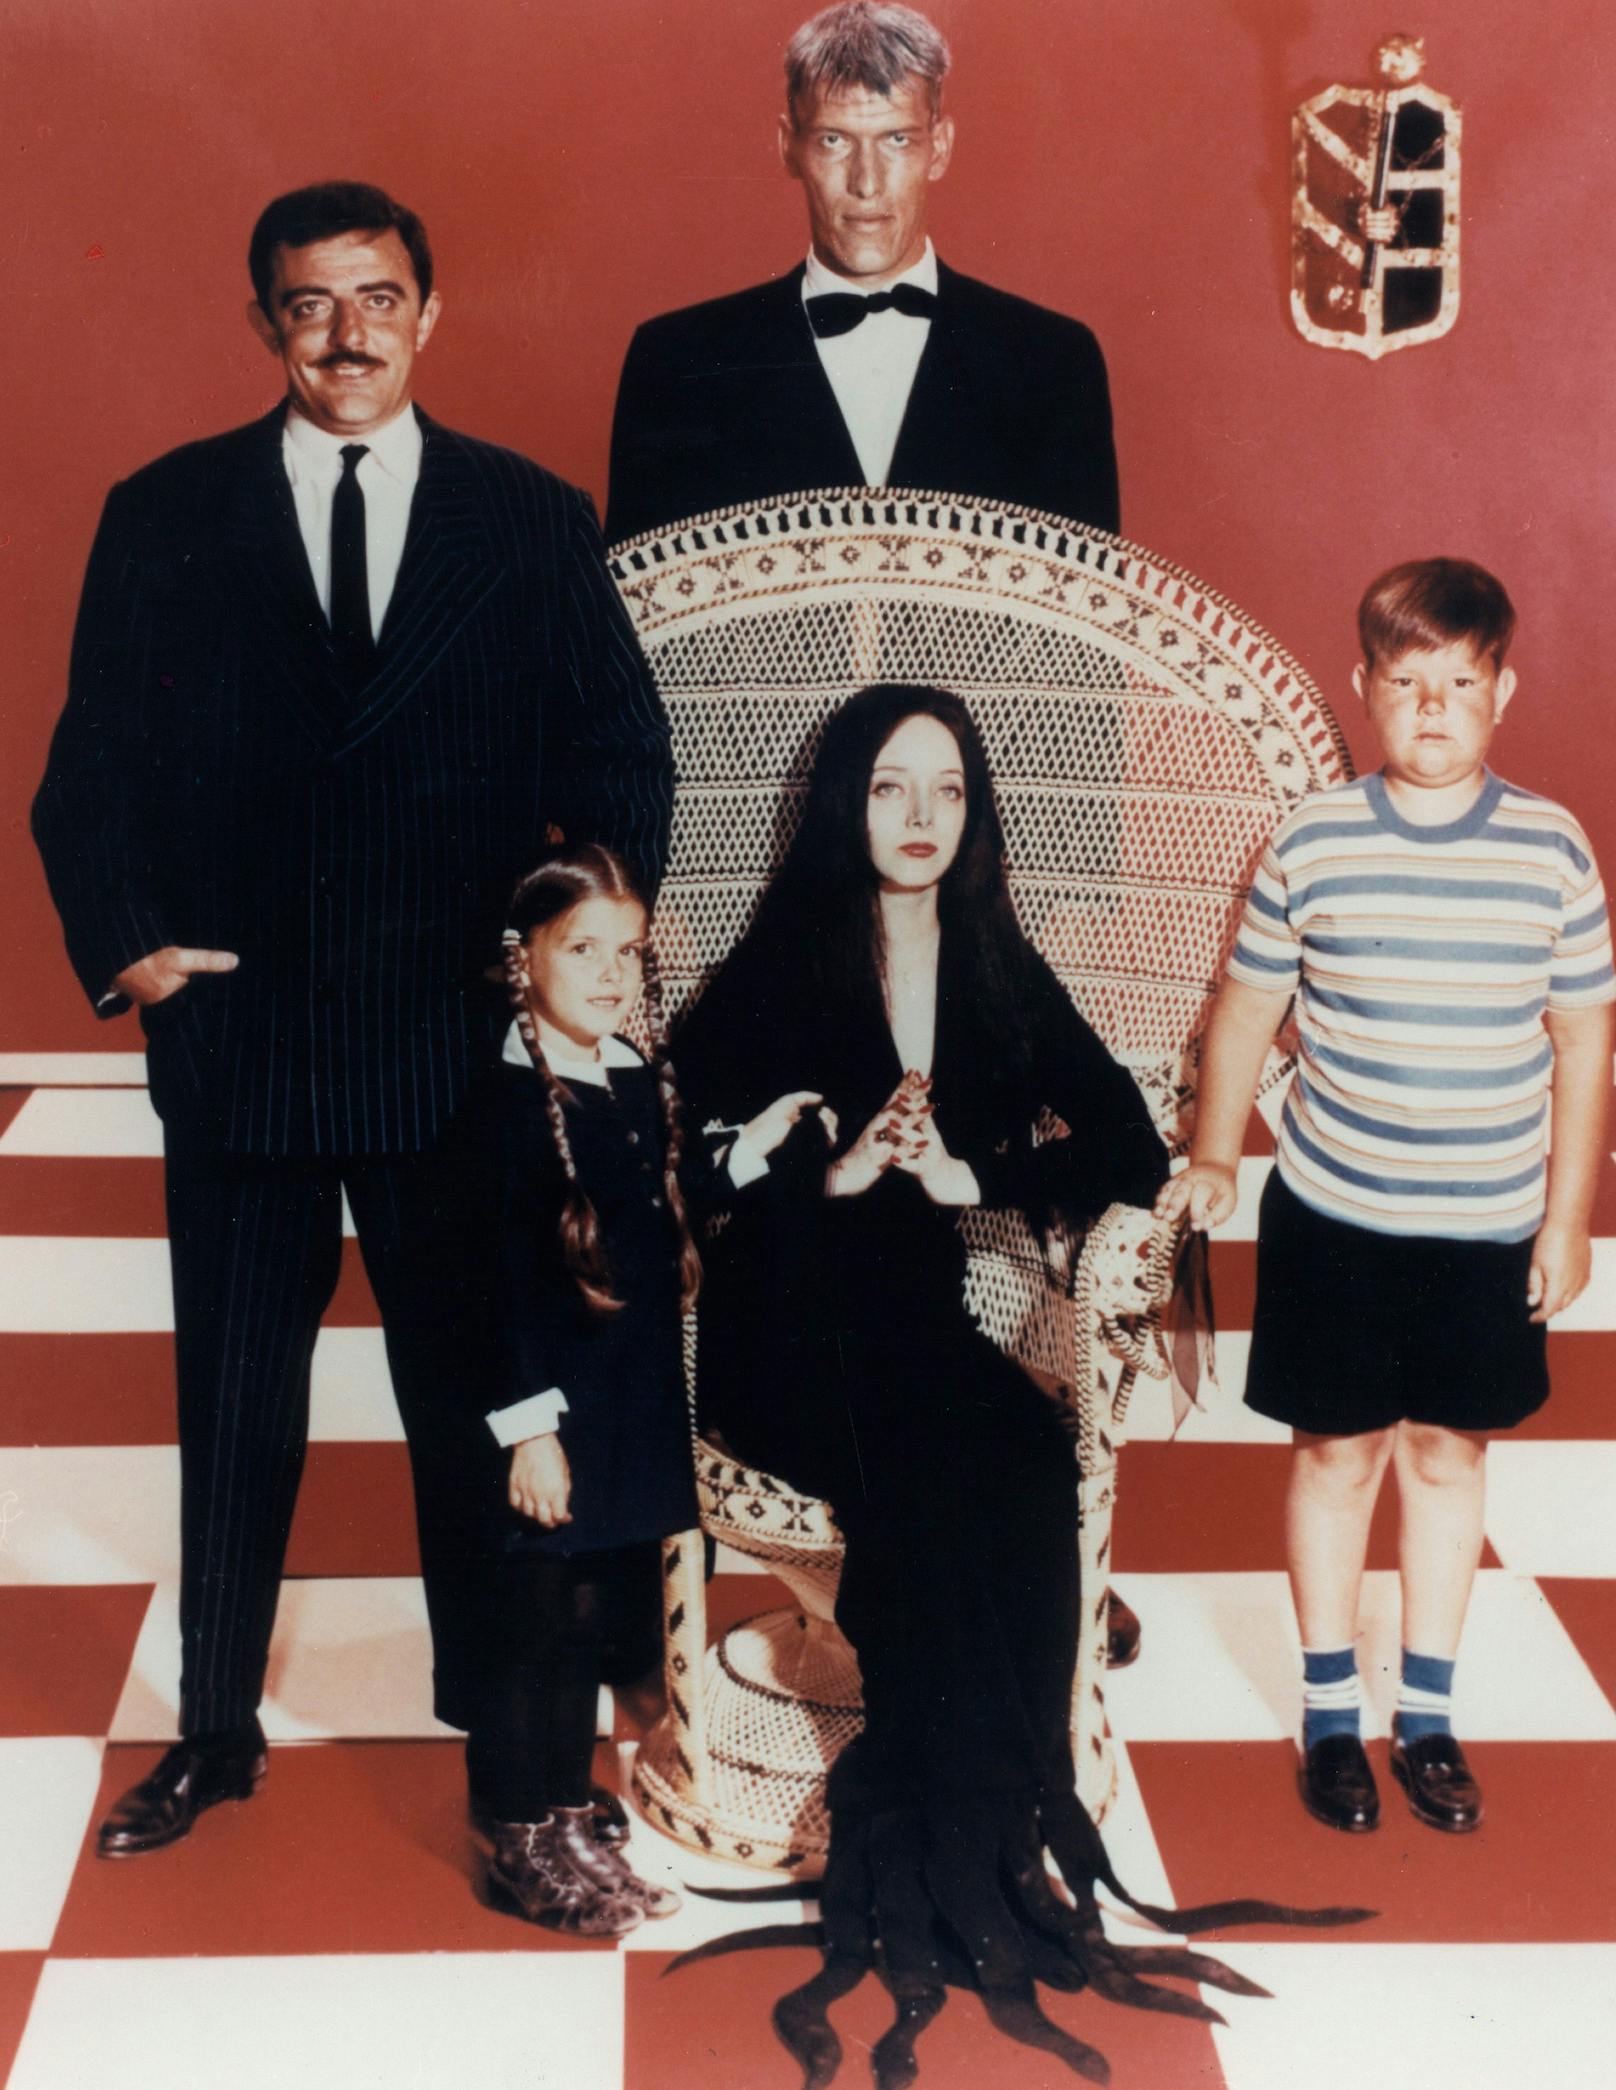 Von 1964 bis 1966 spielte sie in der ersten Adaption von Charles Addams New Yorker Cartoon "The Addams Family" die Rolle der Wednesday Addams.  Ihre Version der Rolle prägt die Popkultur bis heute.